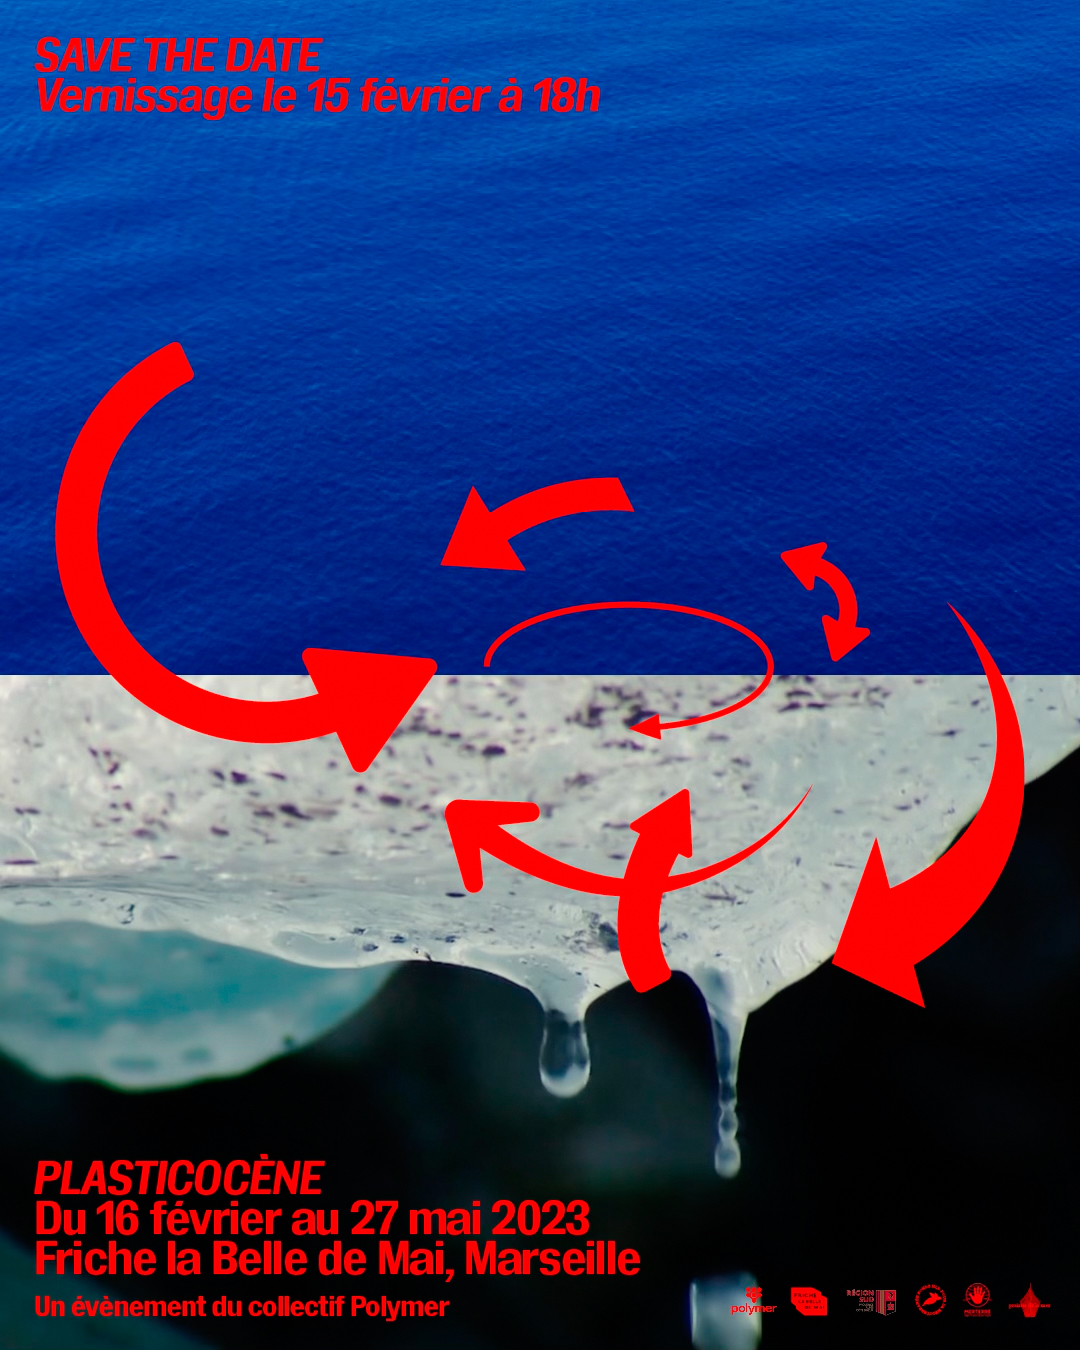 Plasticocène Polymer